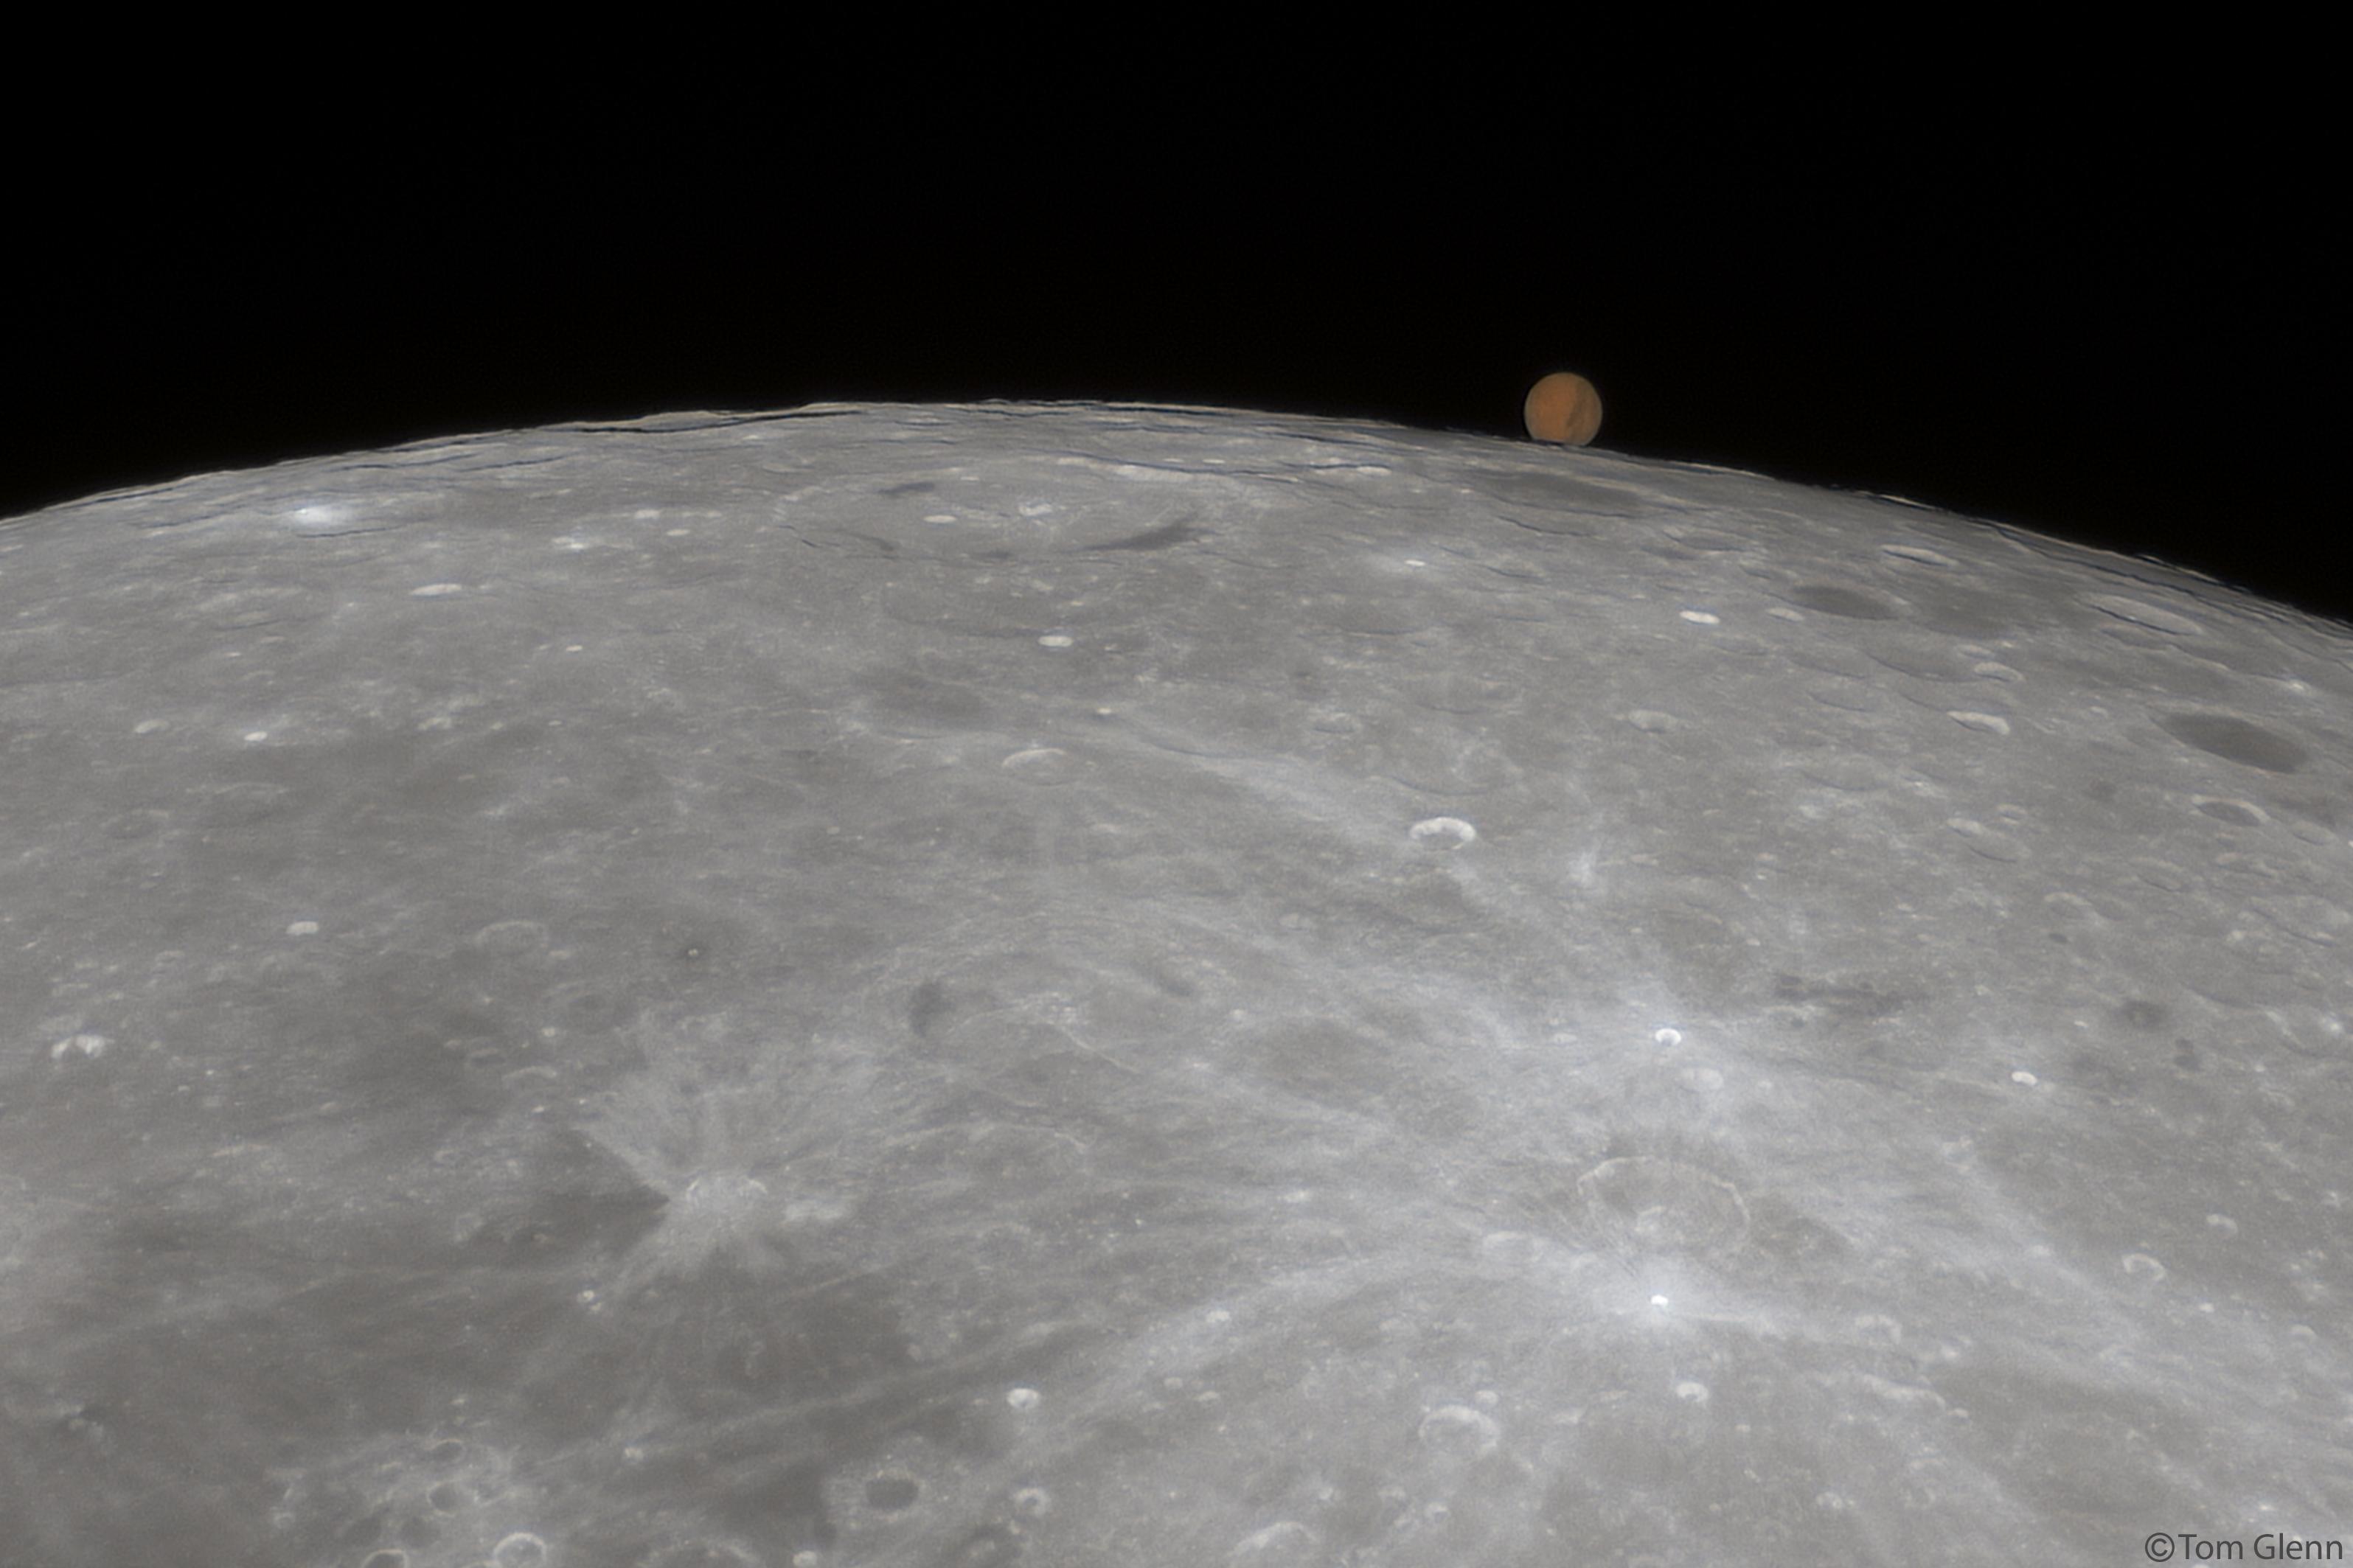 صورةٌ تُظهِر المرّيخ وهو بالكاد يعلو القمر عند فوّهة "آبِل" وذلك قرب احتجابه.